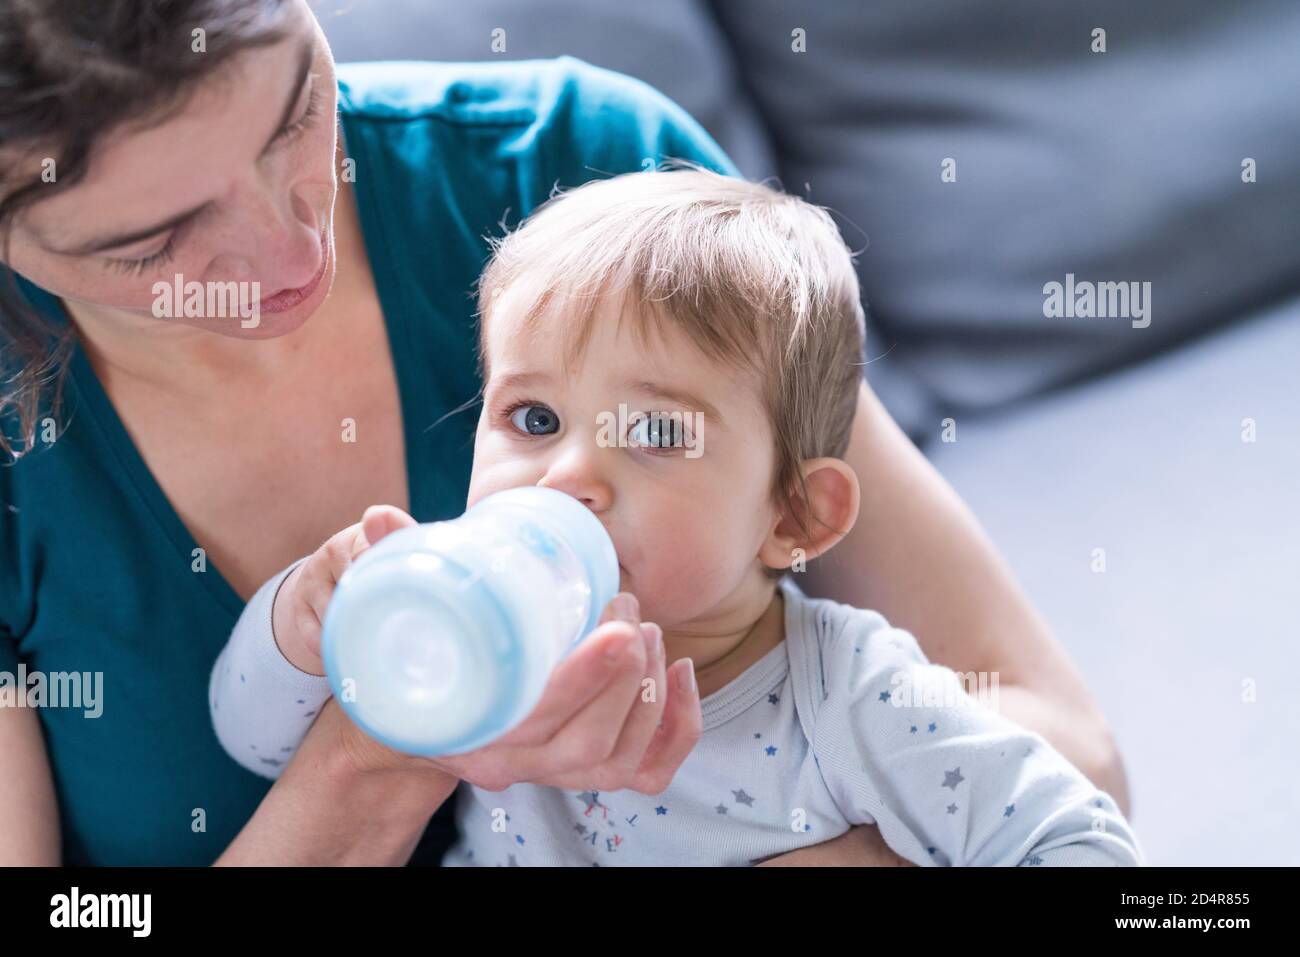 bébé fille de 9 mois qui boit du lait dans un biberon Photo Stock - Alamy